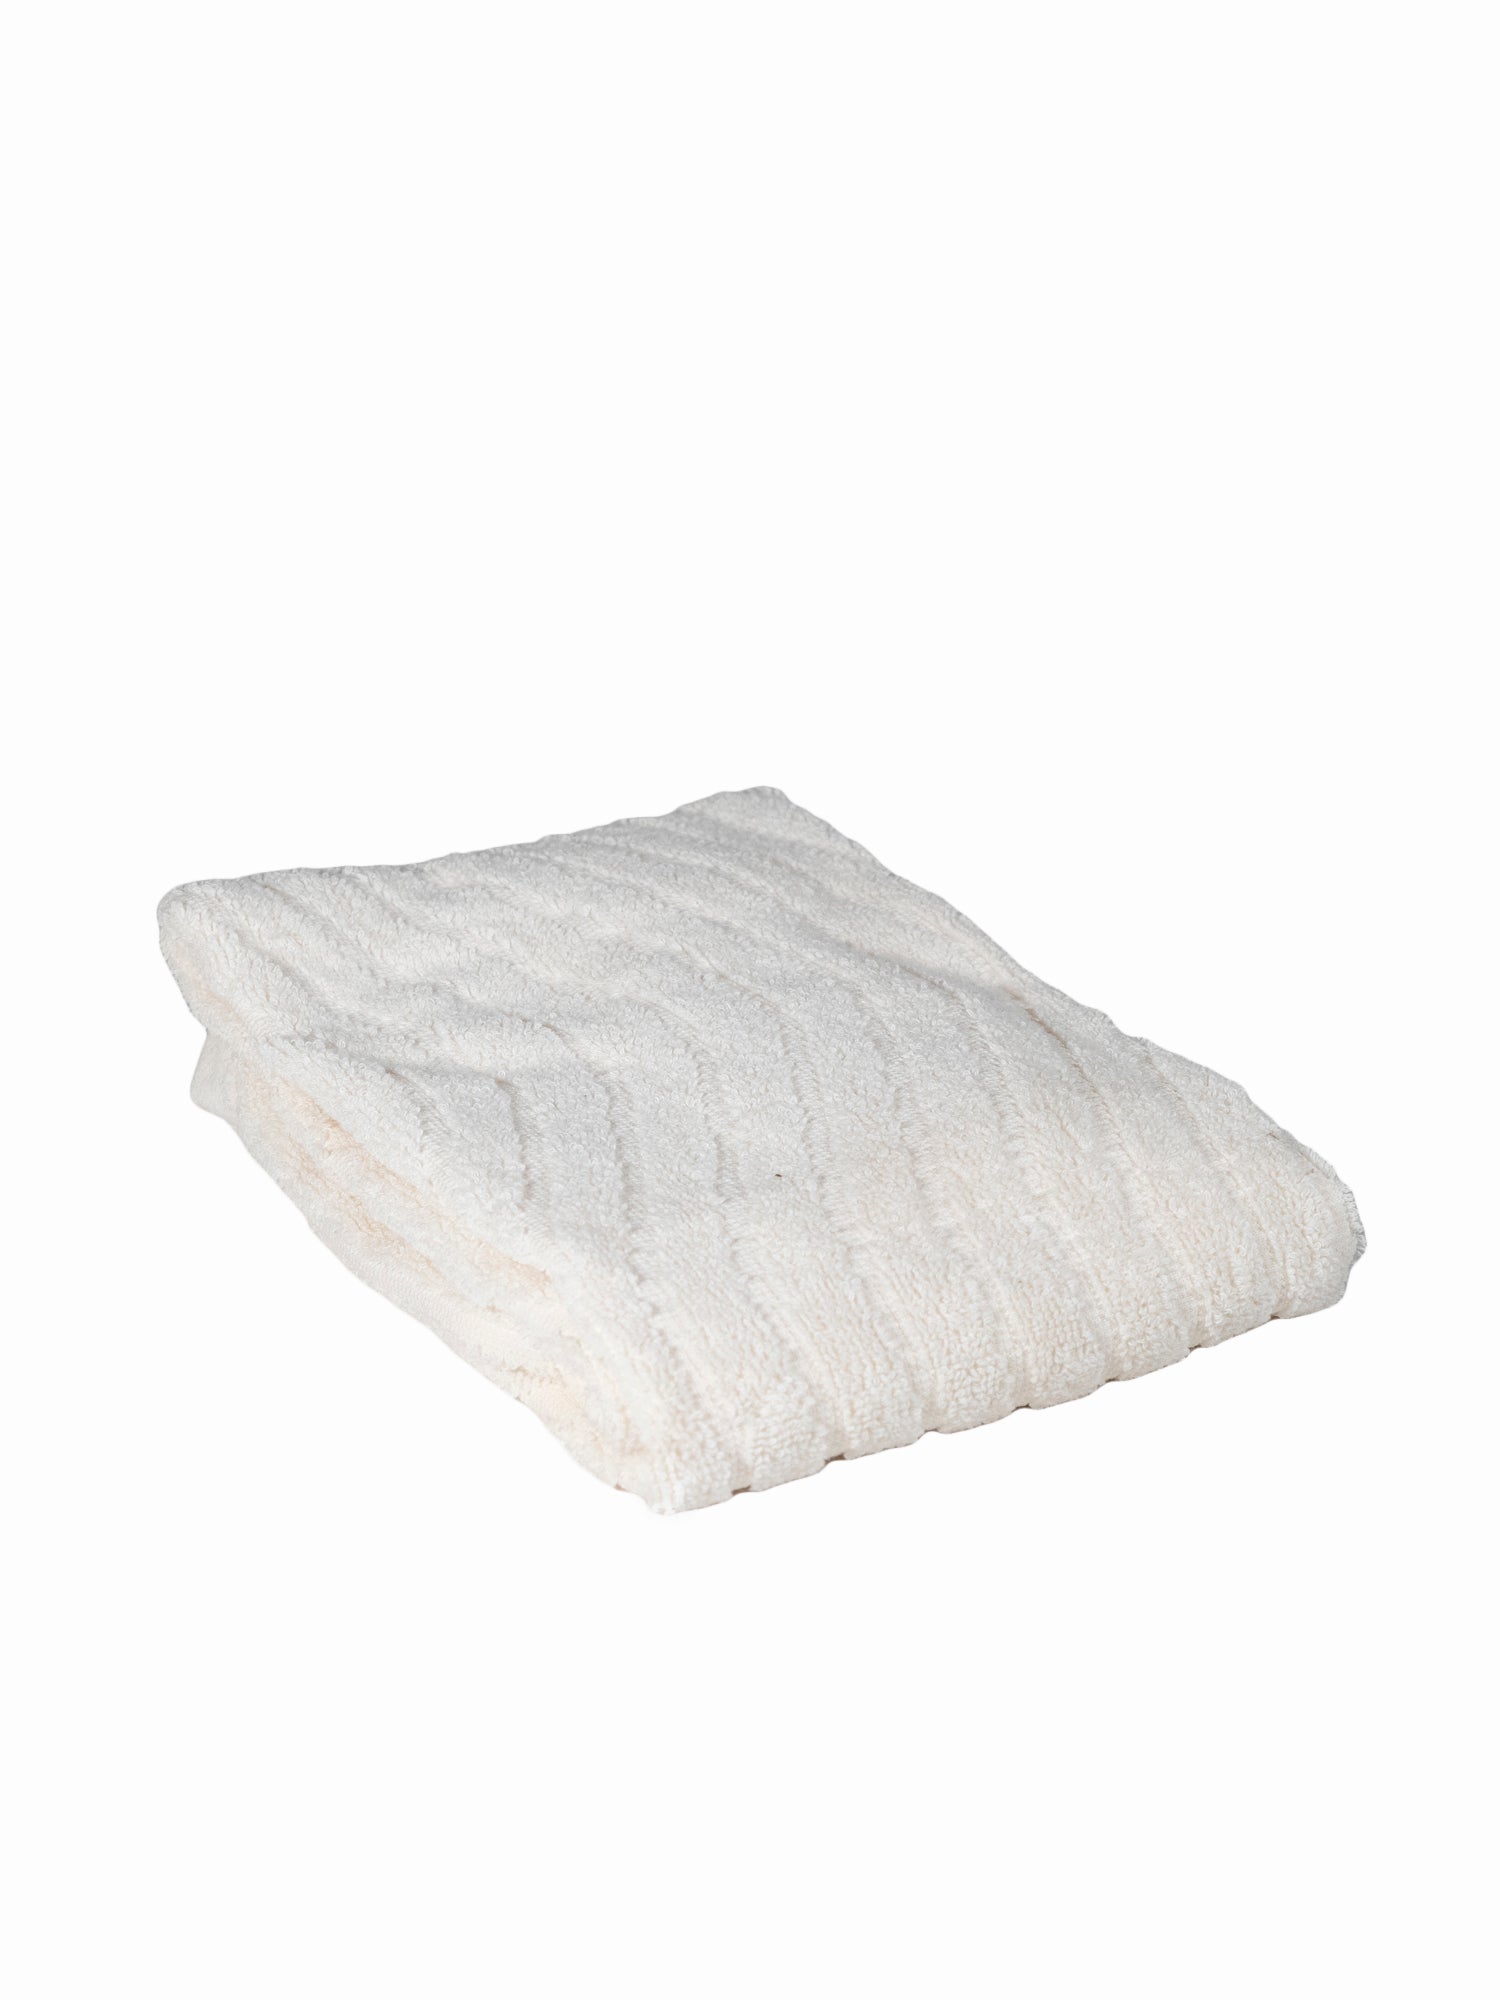 Shop BAINA, ST CLAIR Organic Cotton Bath Towel